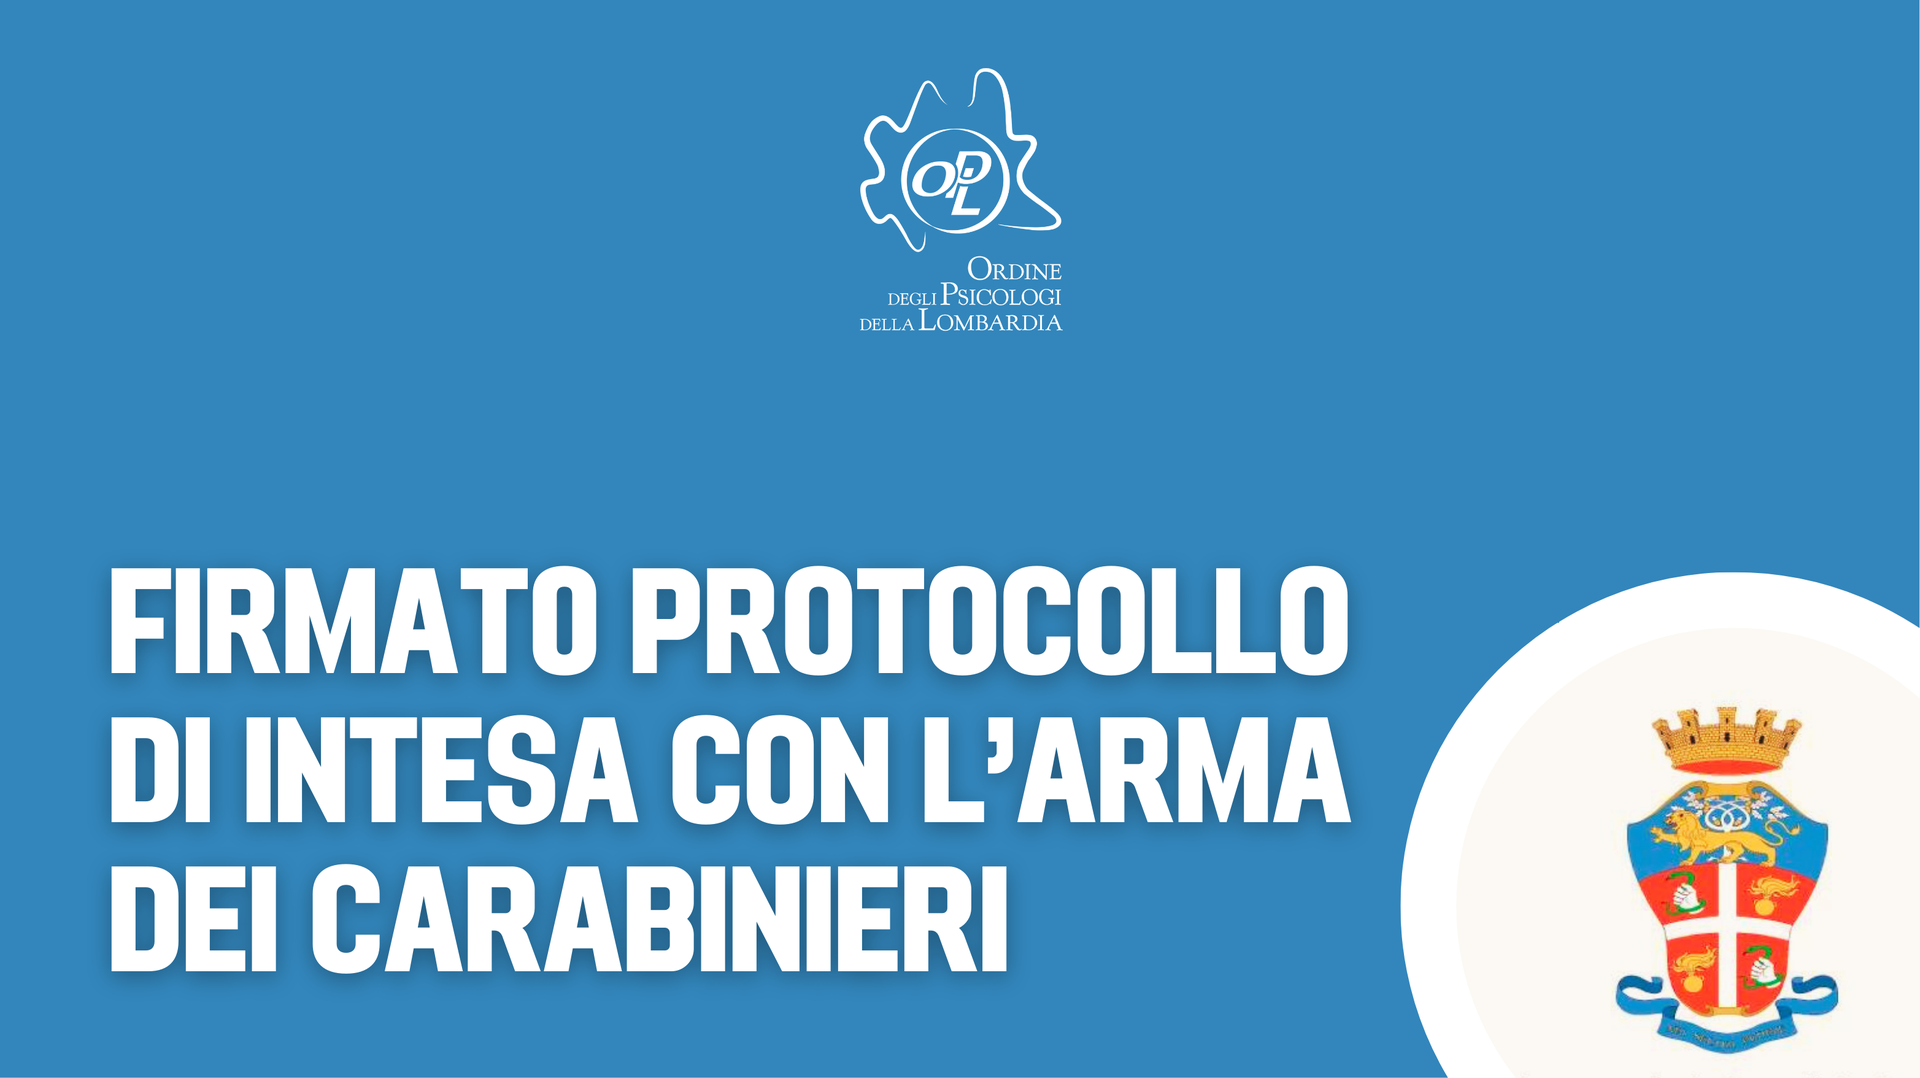 Aggiornamenti del 5 marzo - Equo compenso, protocollo con l'arma dei carabinieri, etica dei test psicodiagnostici e eventi da non perdere